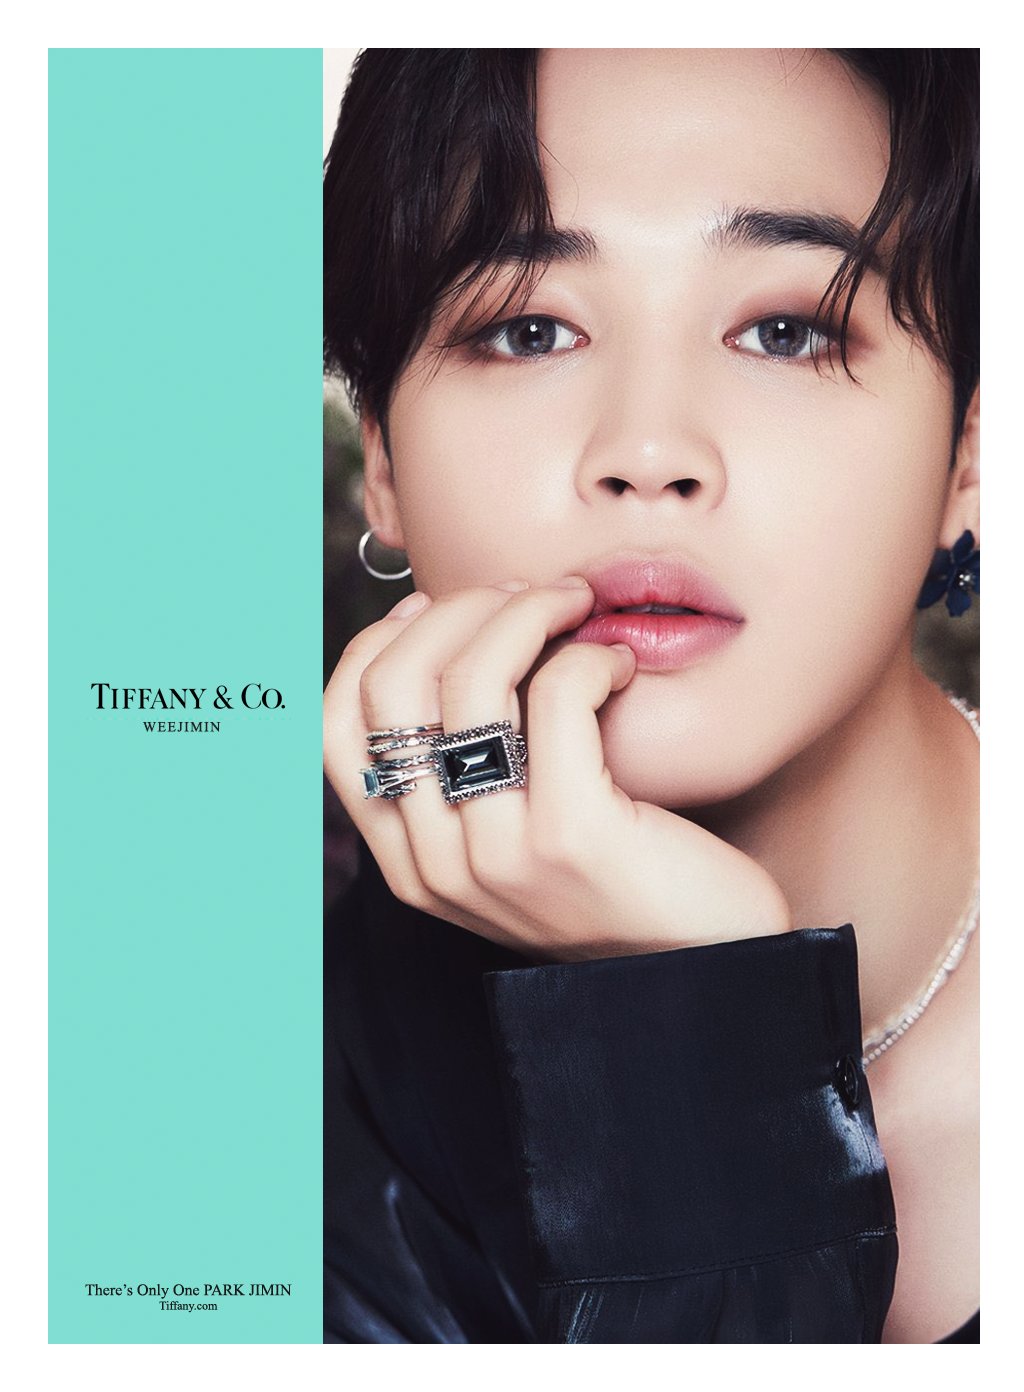 K-pop BTS' Jimin Joins Tiffany & Co As Global Ambassador — Anne of